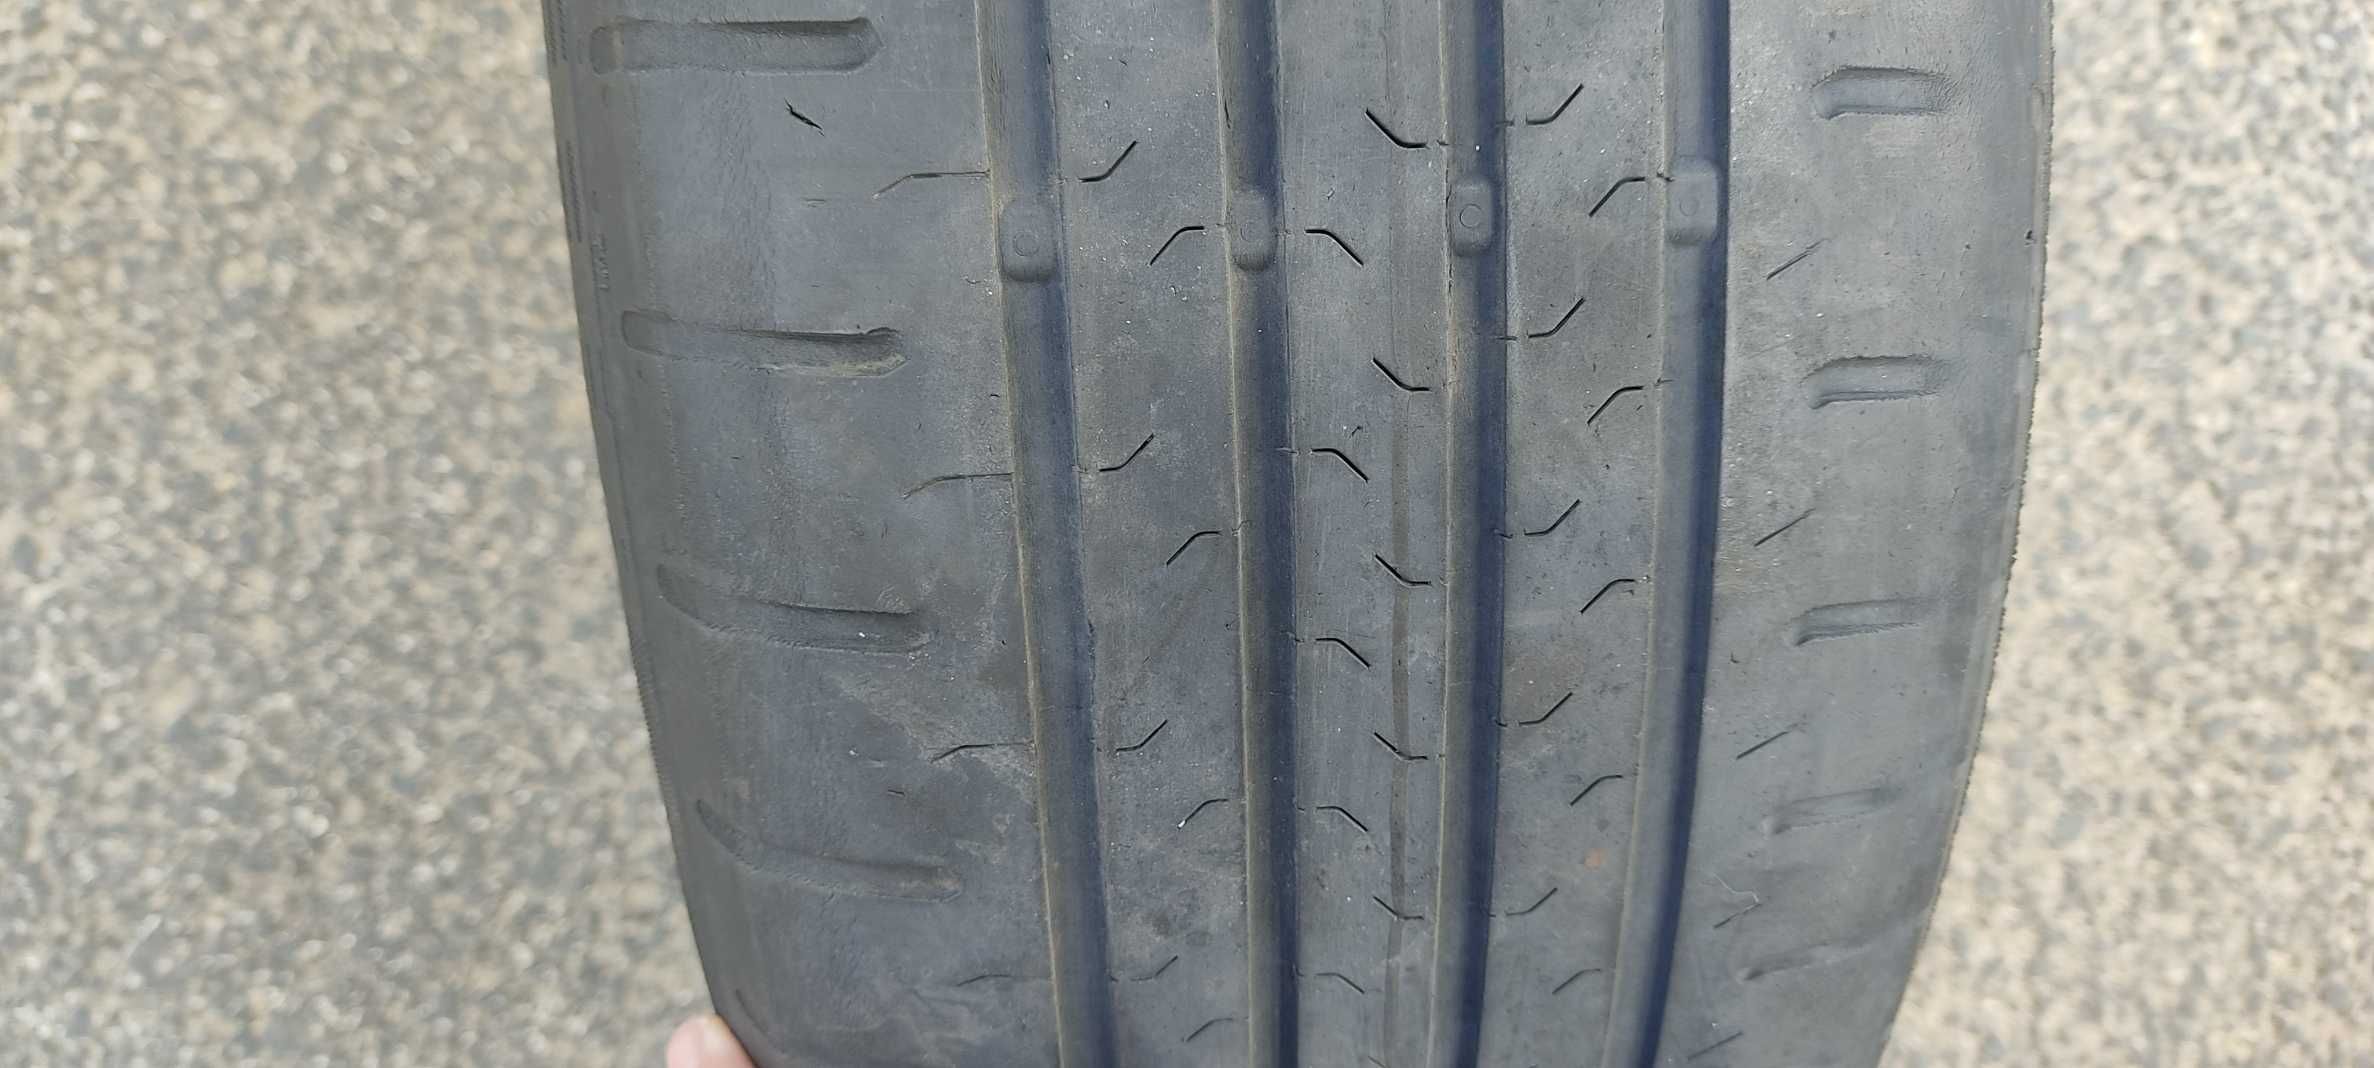 Vende-se pneu usado em boas condições 205/60 R16 5x114.3